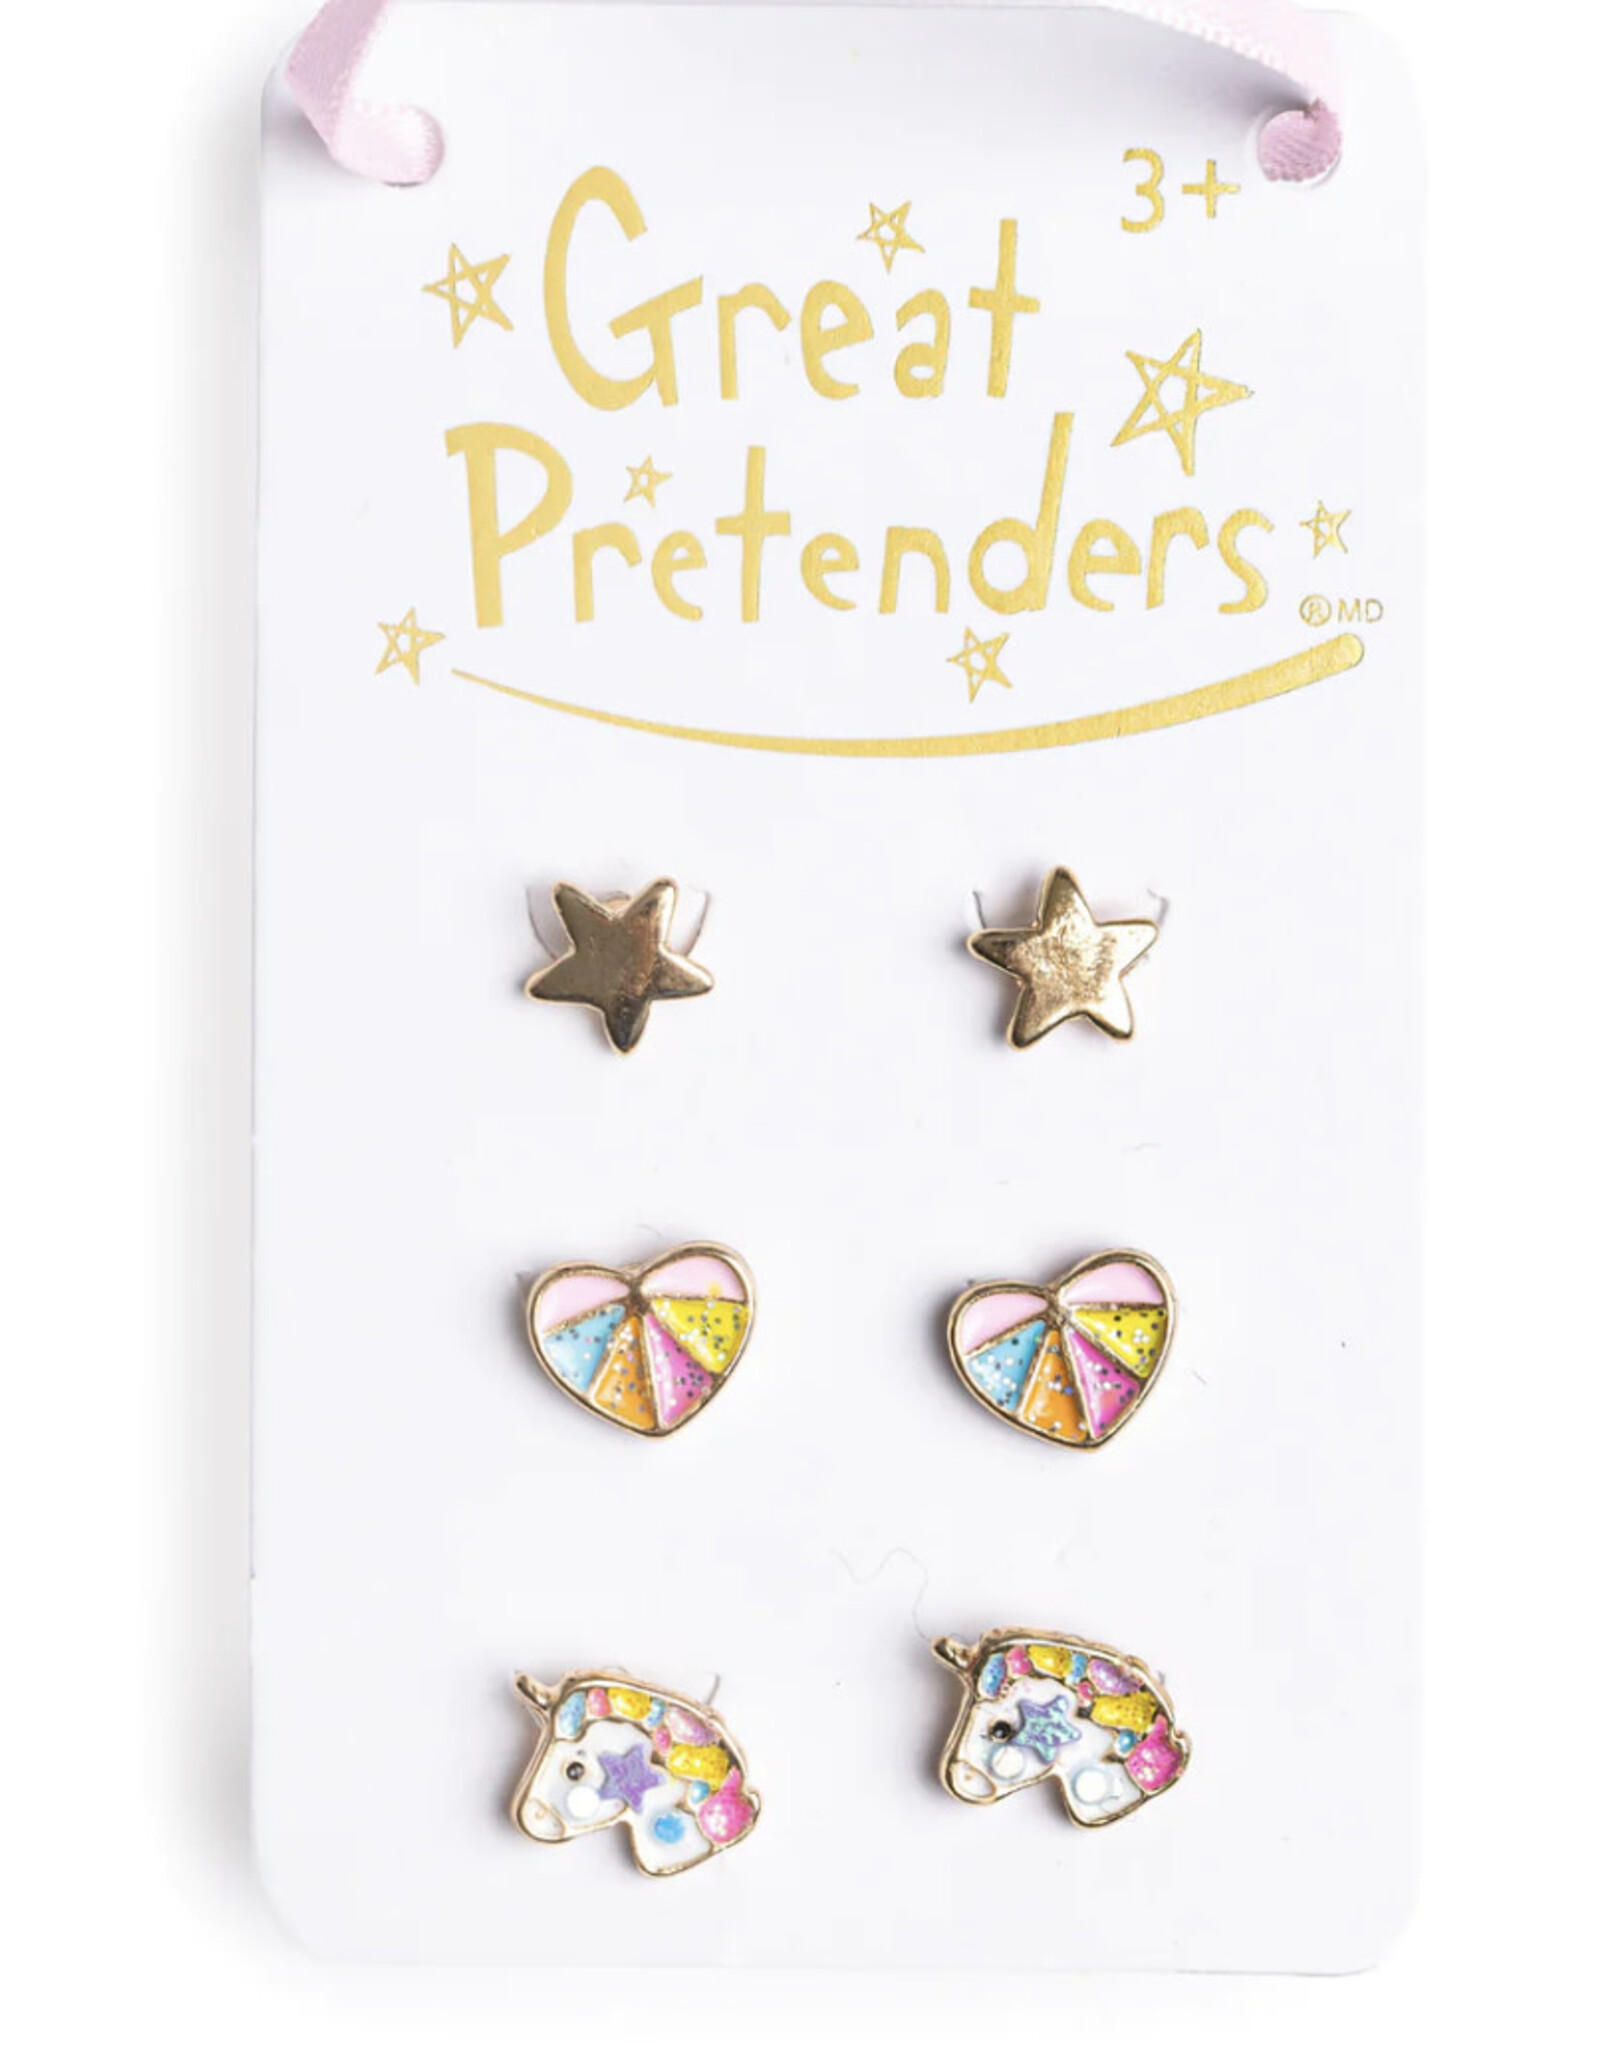 Great Pretenders Cheerful Studded Earrings